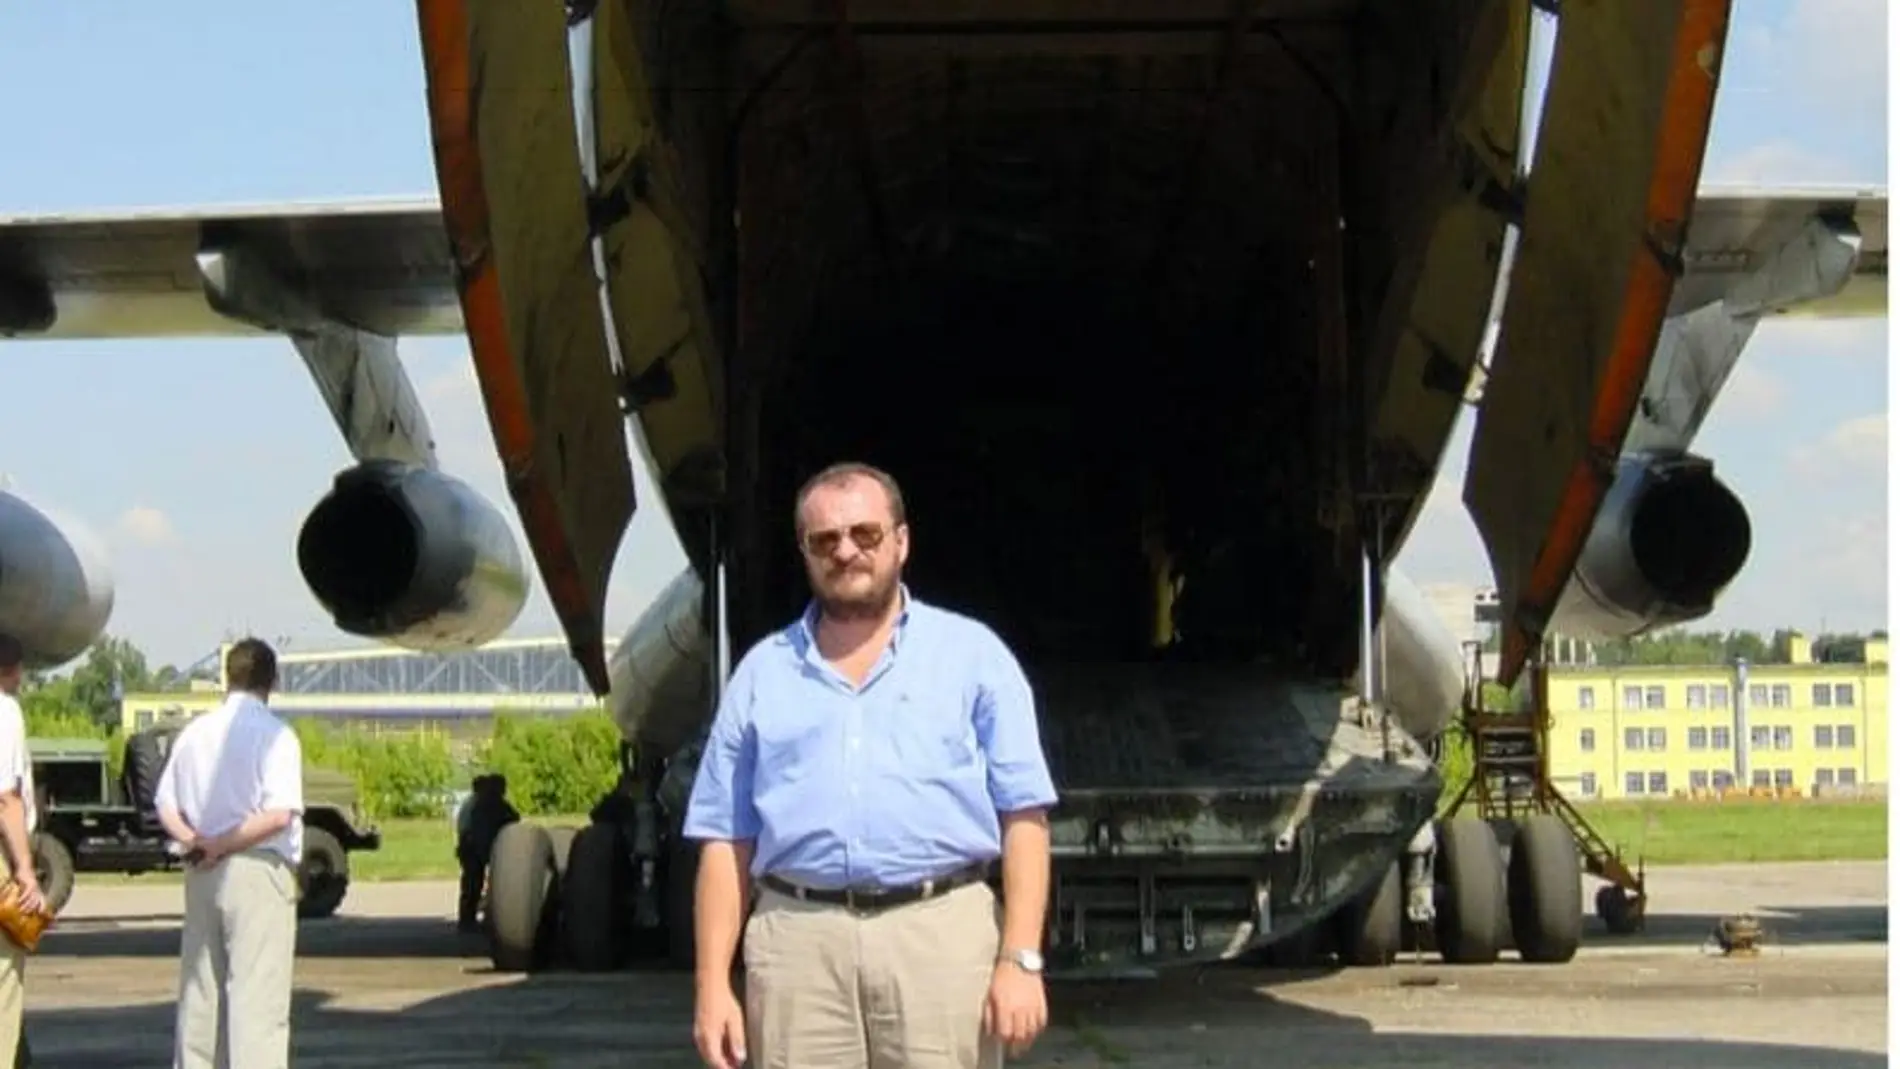 Imagen del sumario en la que aparece Vladimir Kokorev delante de un avión